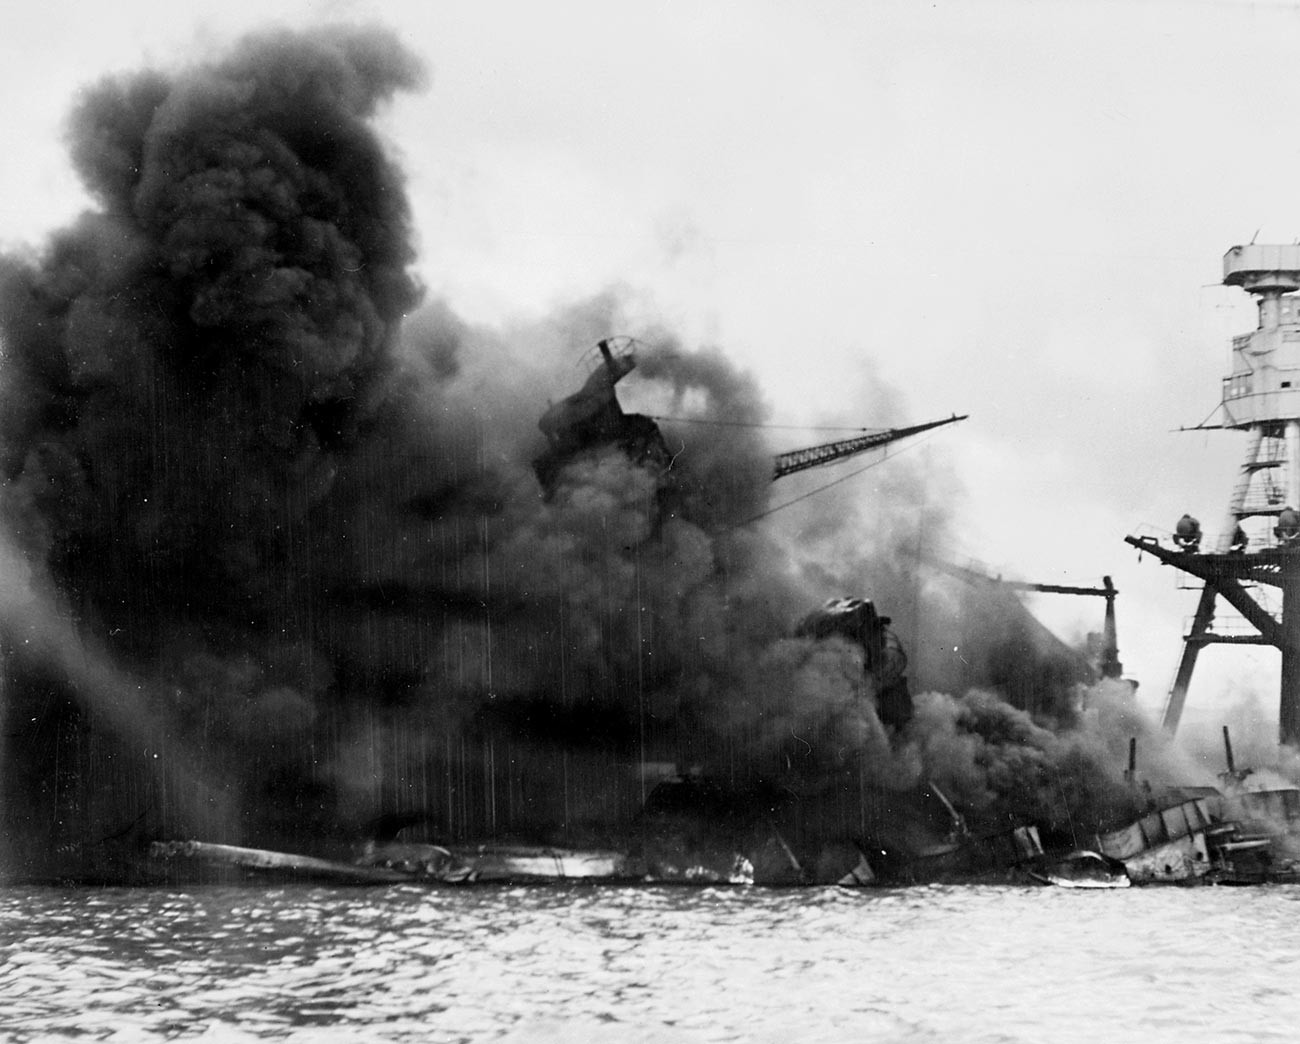 Ameriška bojna ladja USS Arizona v ognju po eksploziji na skladišču streliva, na katerega je padla japonska bomba.

